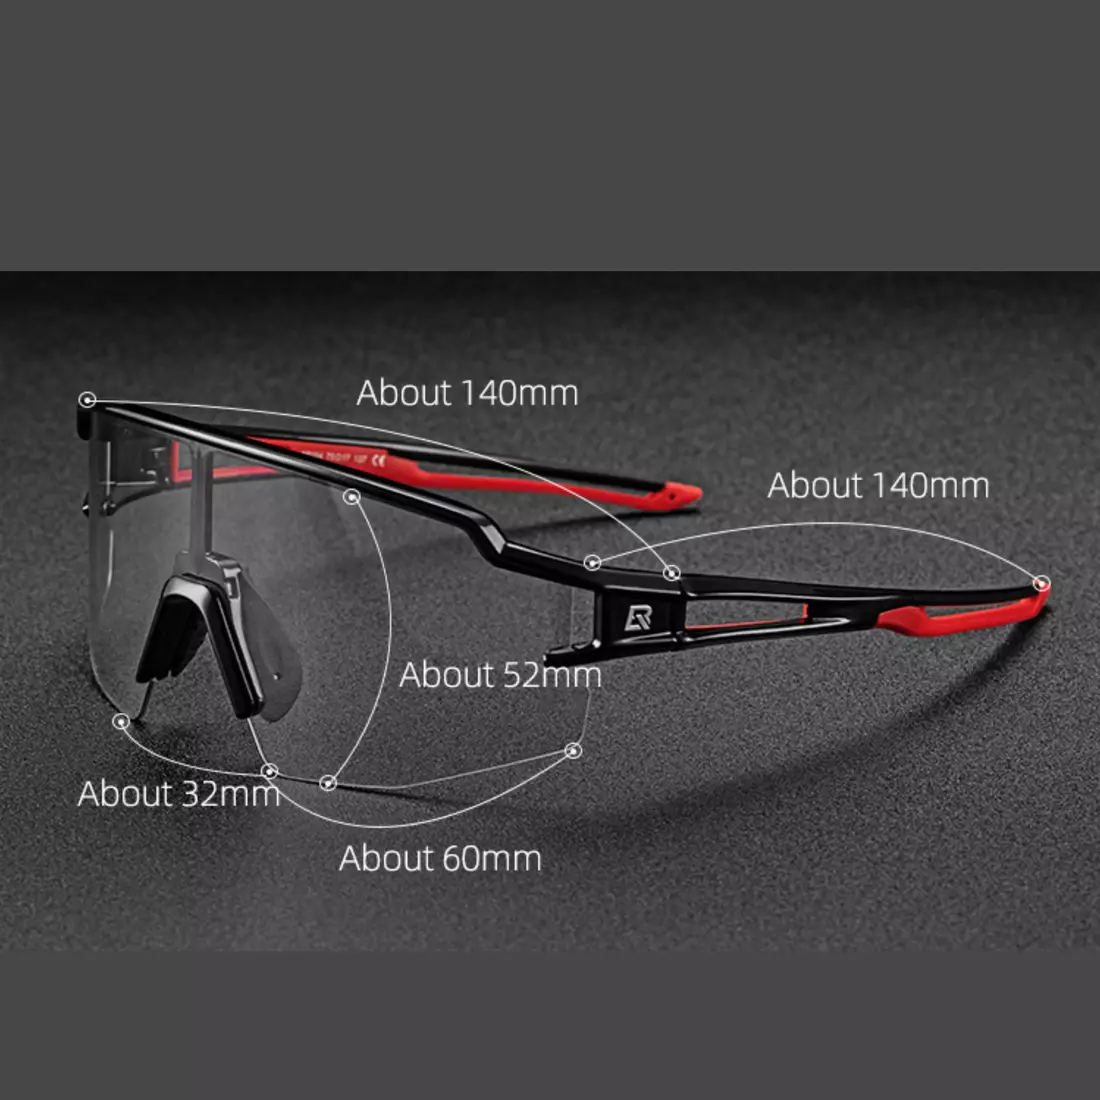 Rockbros 10172 okulary rowerowe / sportowe z fotochromem białe